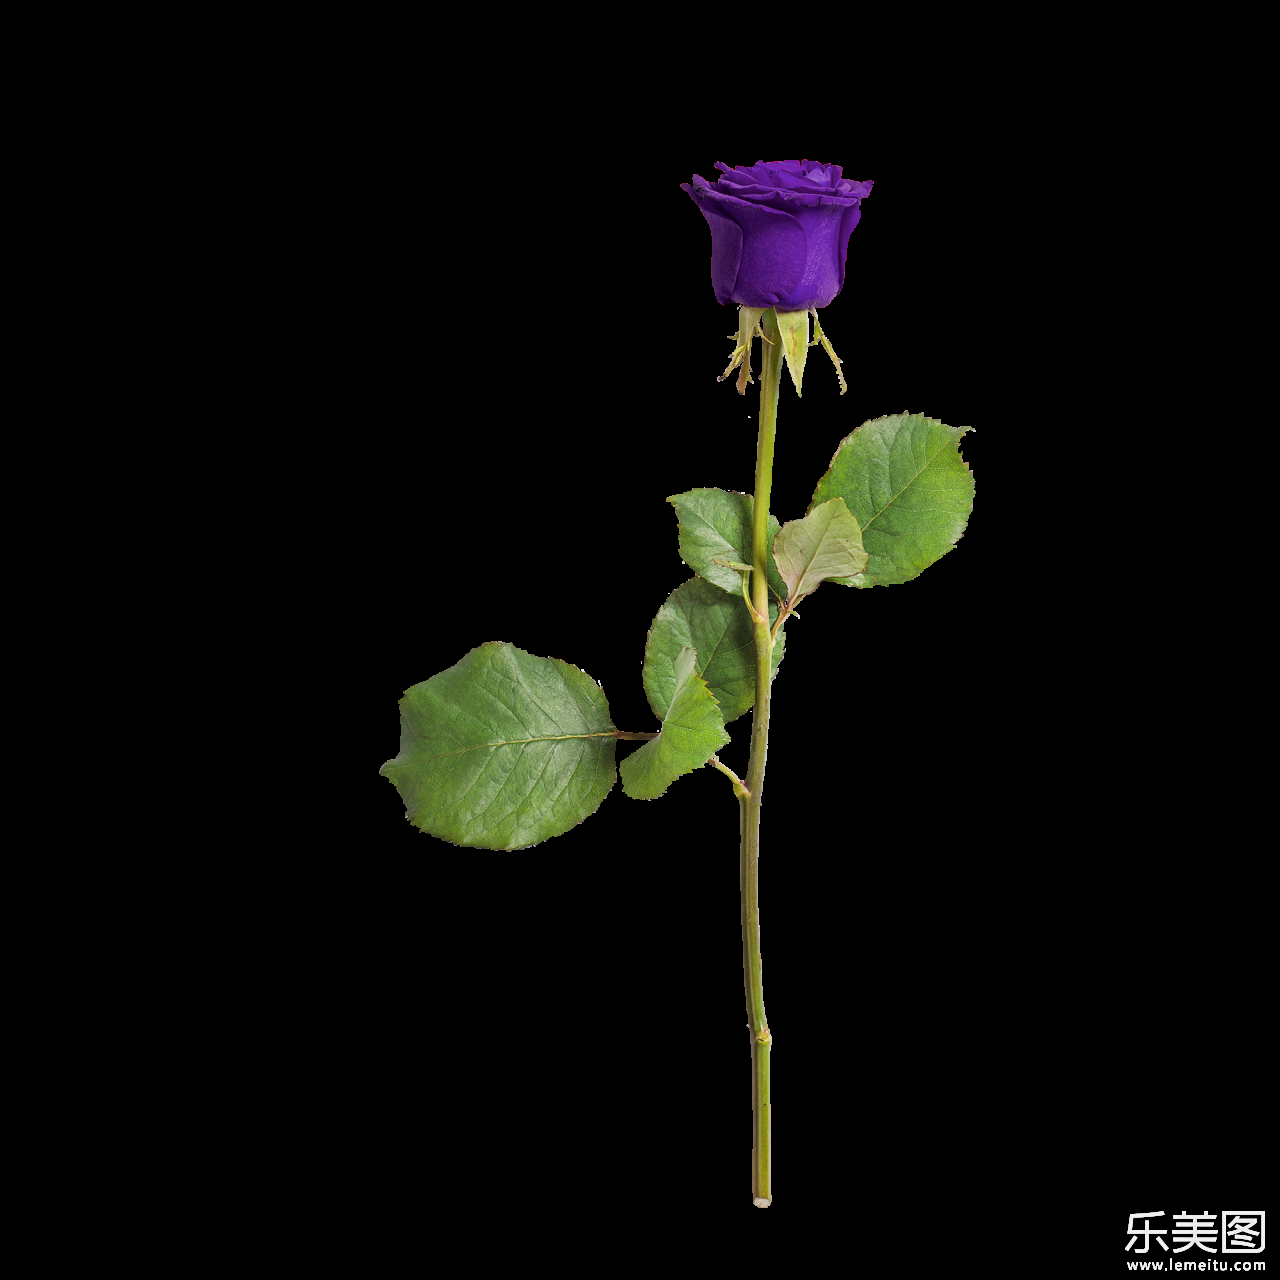 绿色枝叶紫色花朵自然玫瑰植物